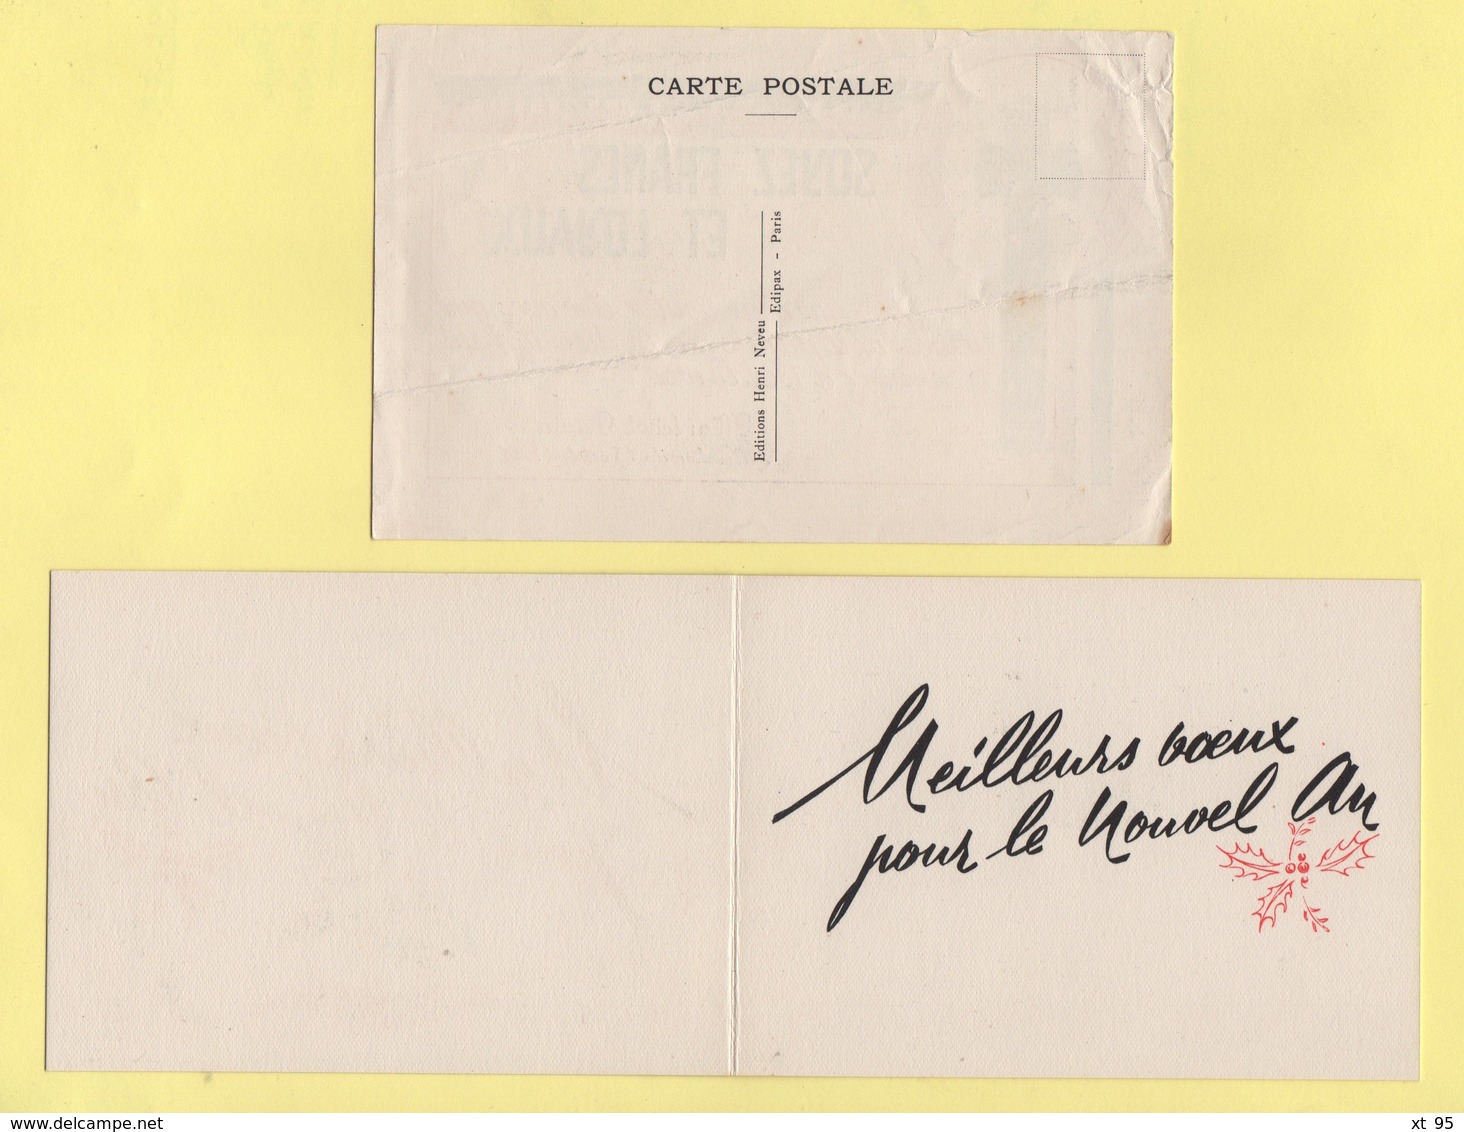 Marechal Petain - lot de 10 documents - calendriers 1943 1944 cartes postales carte de voeux et divers - voir scan